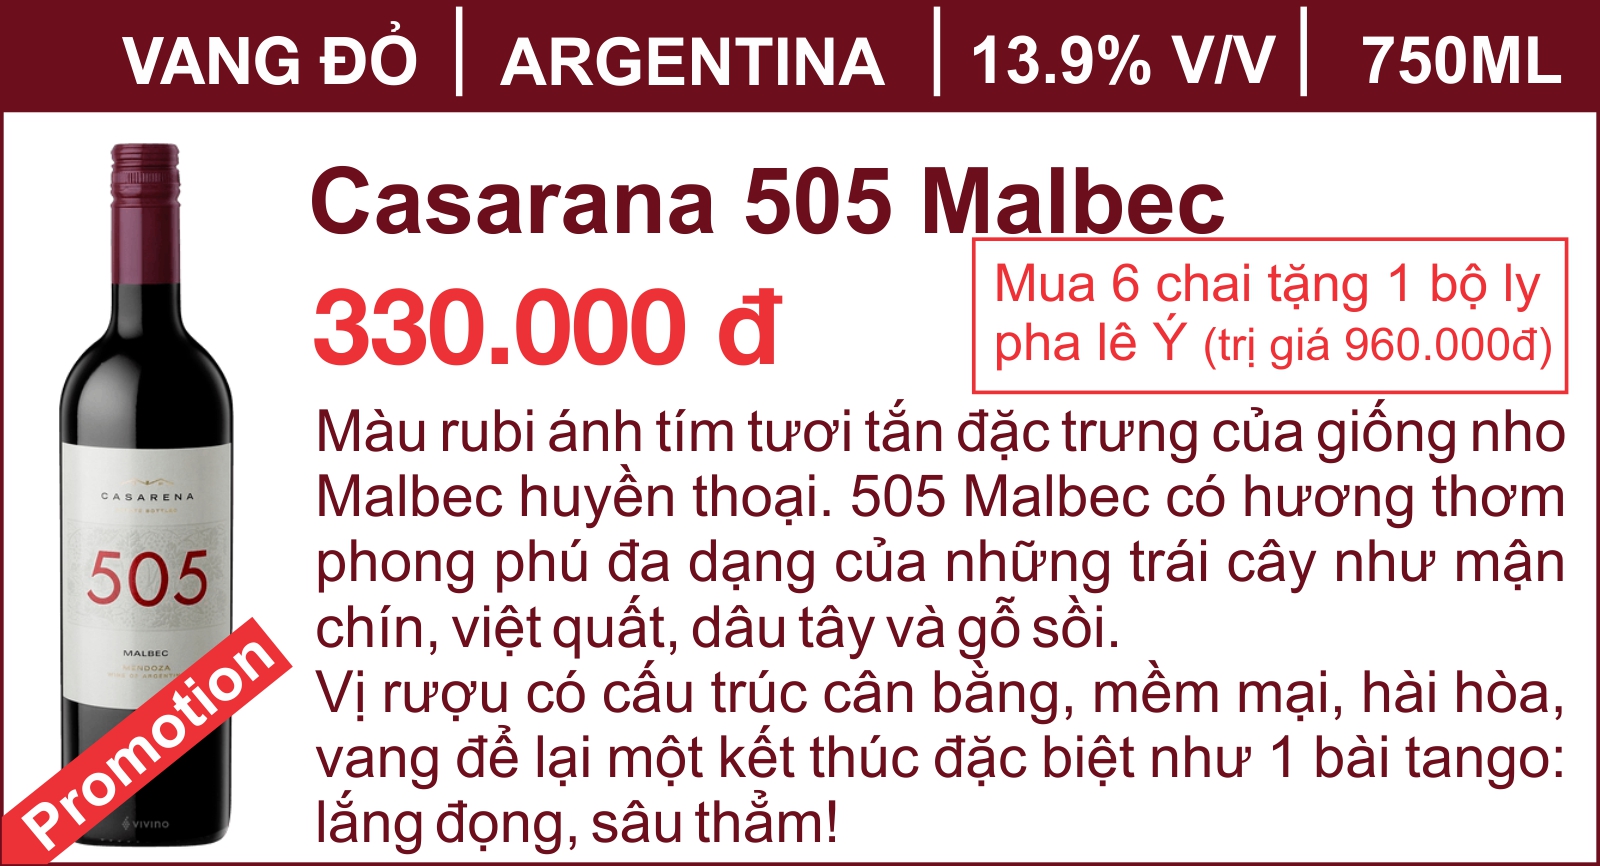 Casarana 505 Malbec